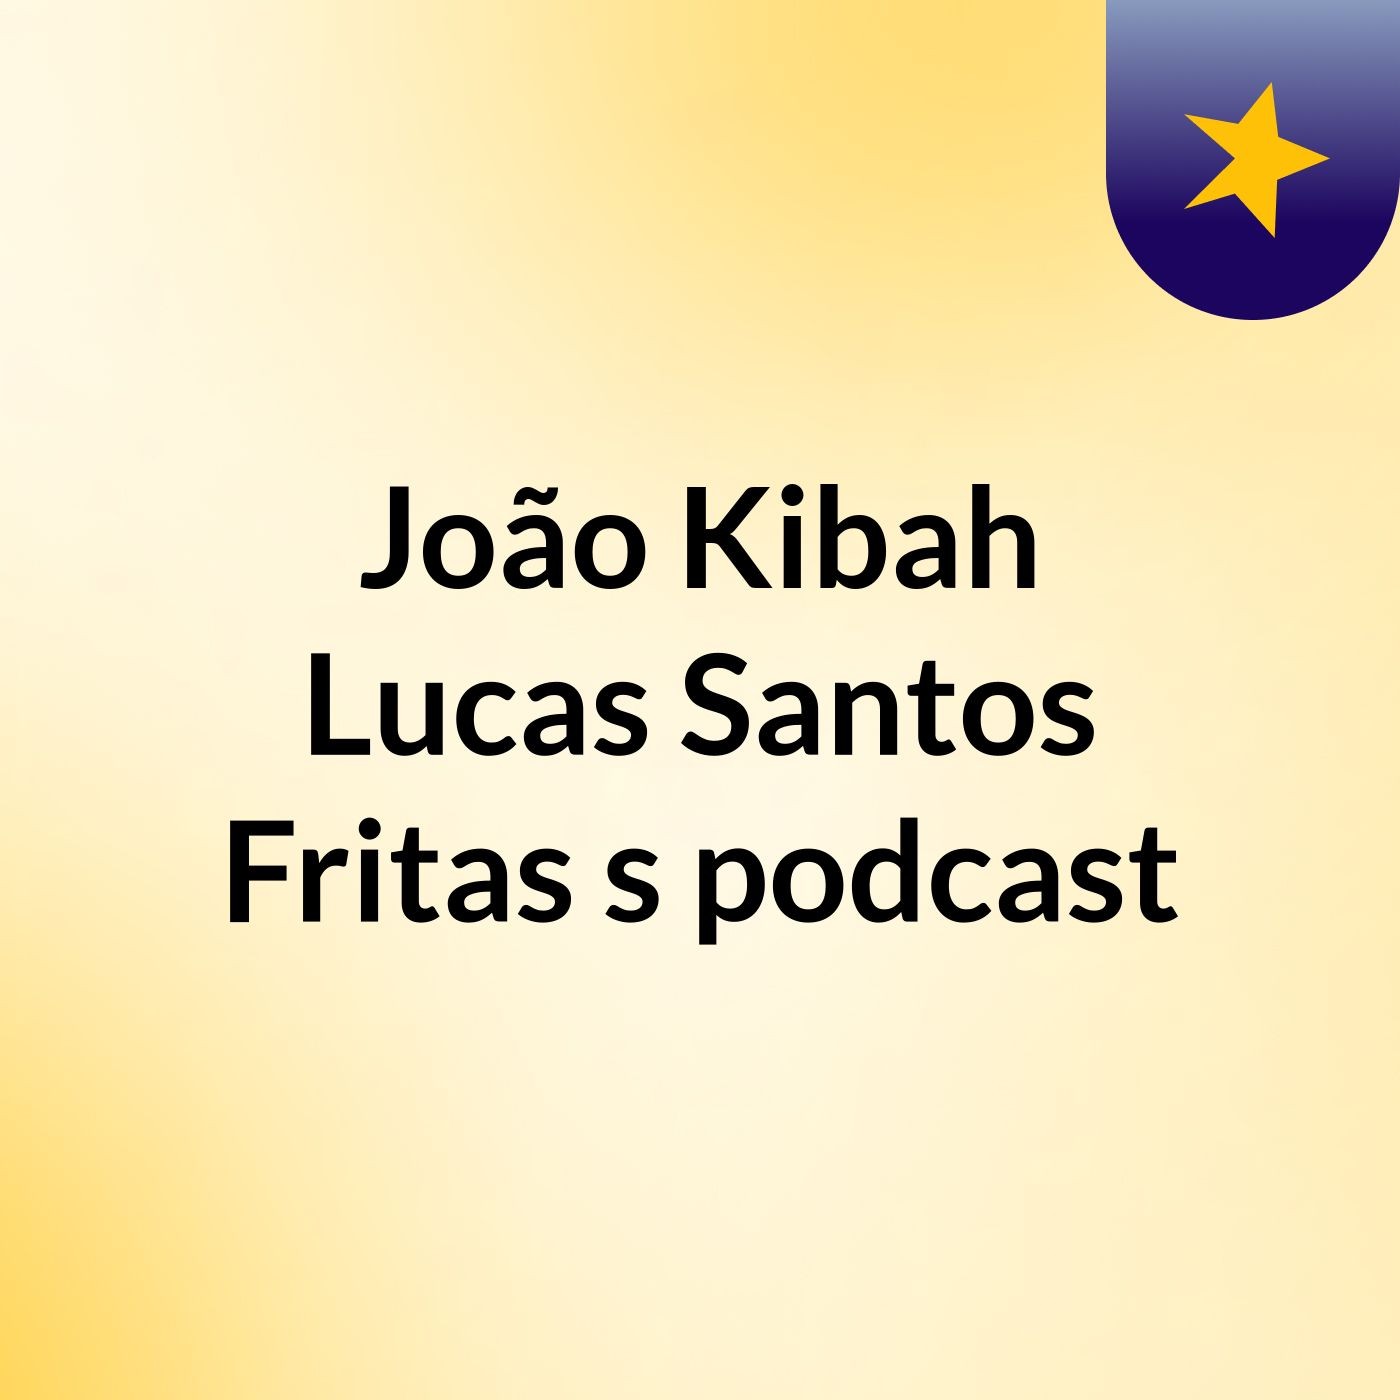 João Kibah Lucas Santos Fritas's podcast